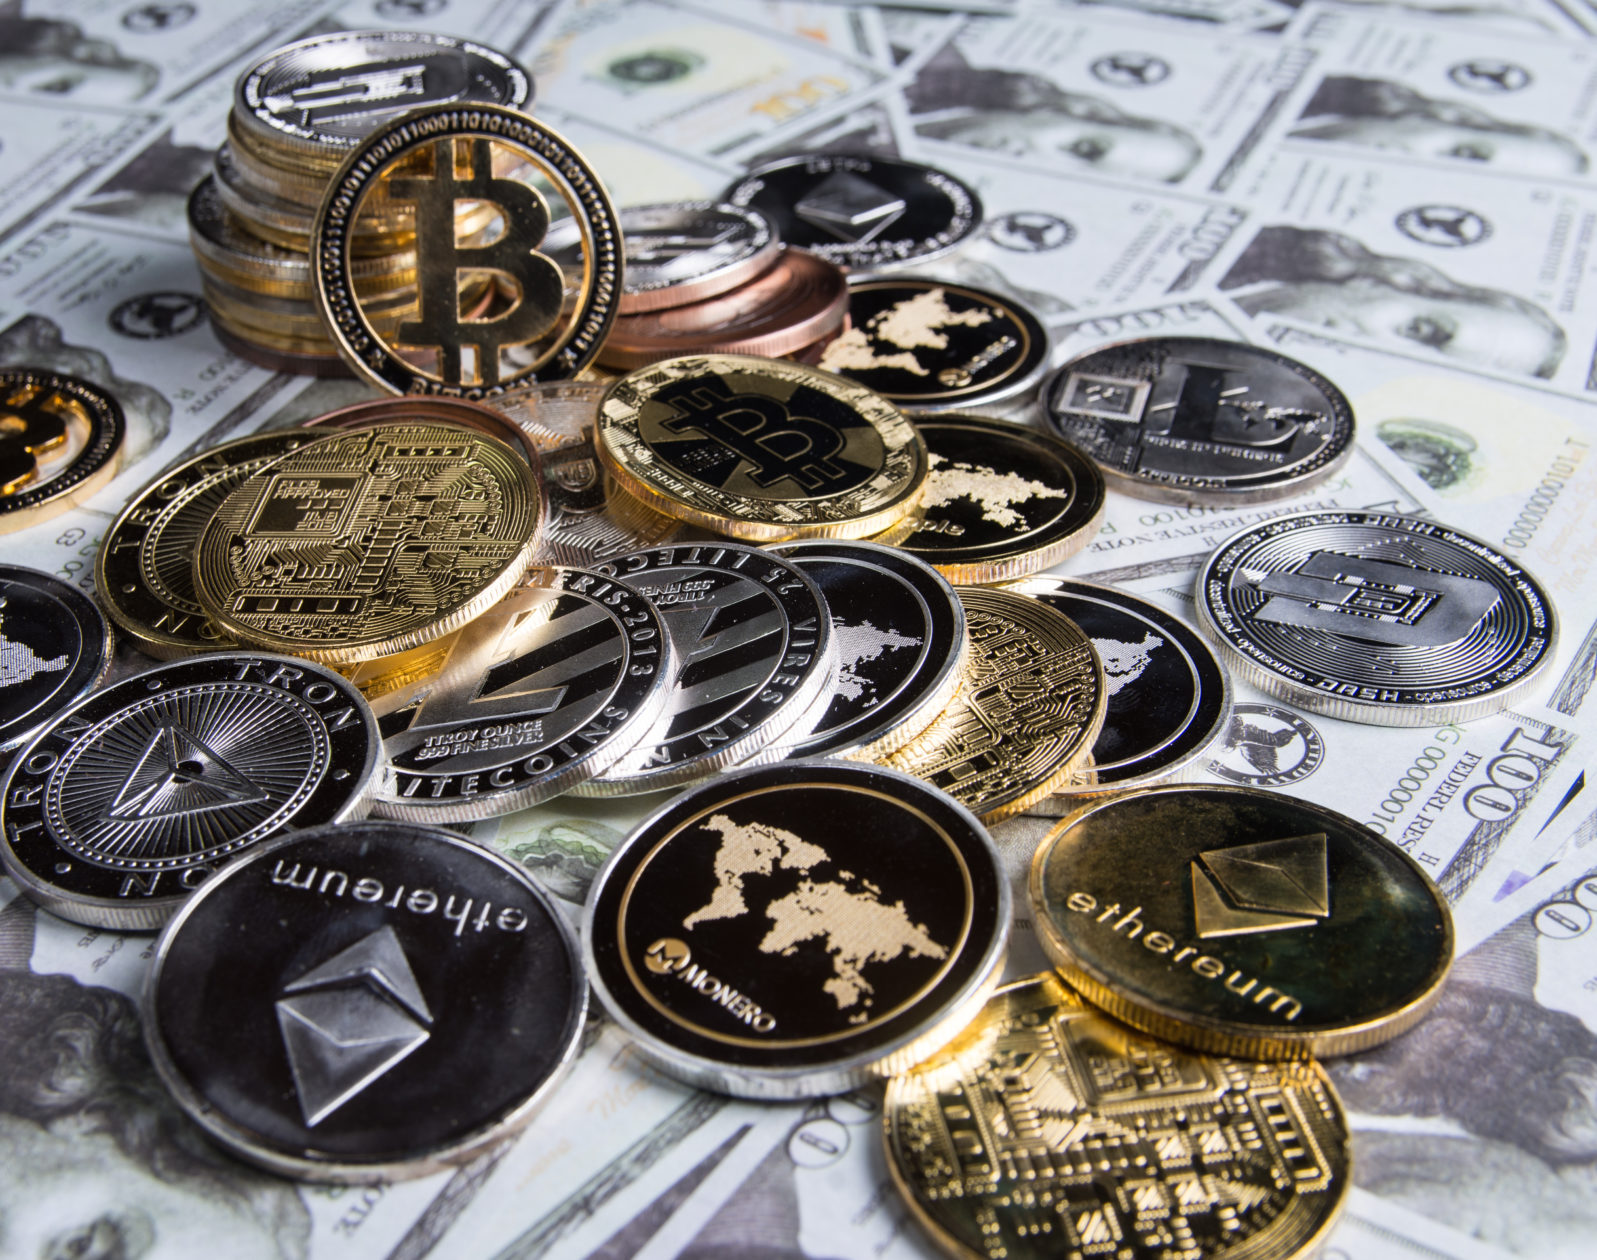 Bitcoin and cryptomoney